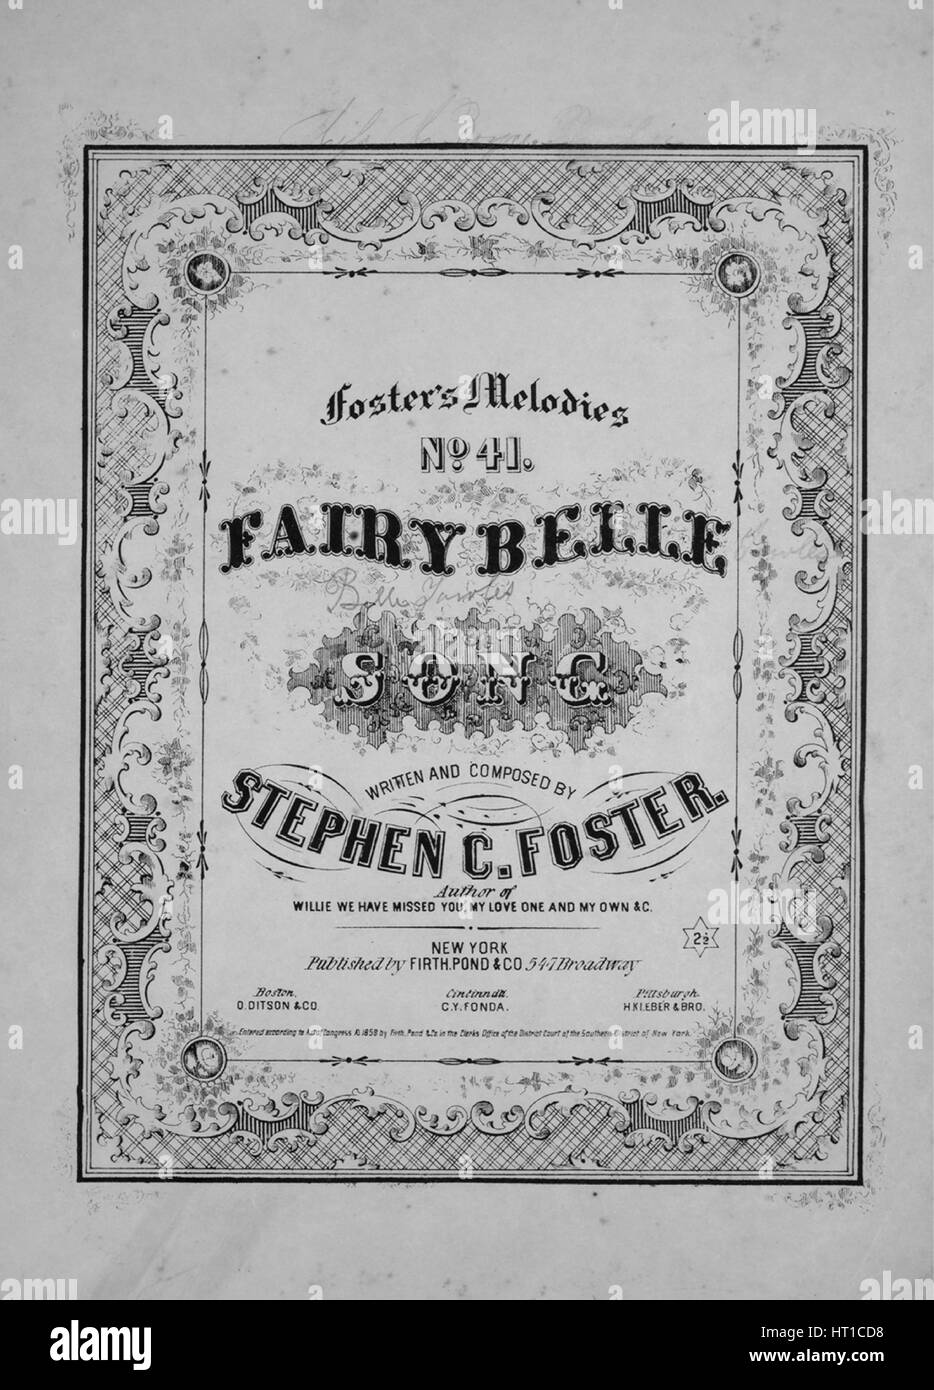 Titelbild der Noten des Liedes "Fosters Melodien No41 Fairy Belle Lied", mit ursprünglichen Autorschaft Noten reading "Geschrieben und komponiert von Stephen C Foster", USA, 1859. Der Verlag als "Firth, Teich und Co., 547 Broadway" aufgeführt ist, die Form der Komposition ist "strophische mit Chor", die Instrumentierung ist "Klavier und Stimme", die erste Linie liest "Den Stolz des Dorfes und die schönste in der Dell" und der Abbildung Künstler als 'None' aufgeführt ist. Stockfoto